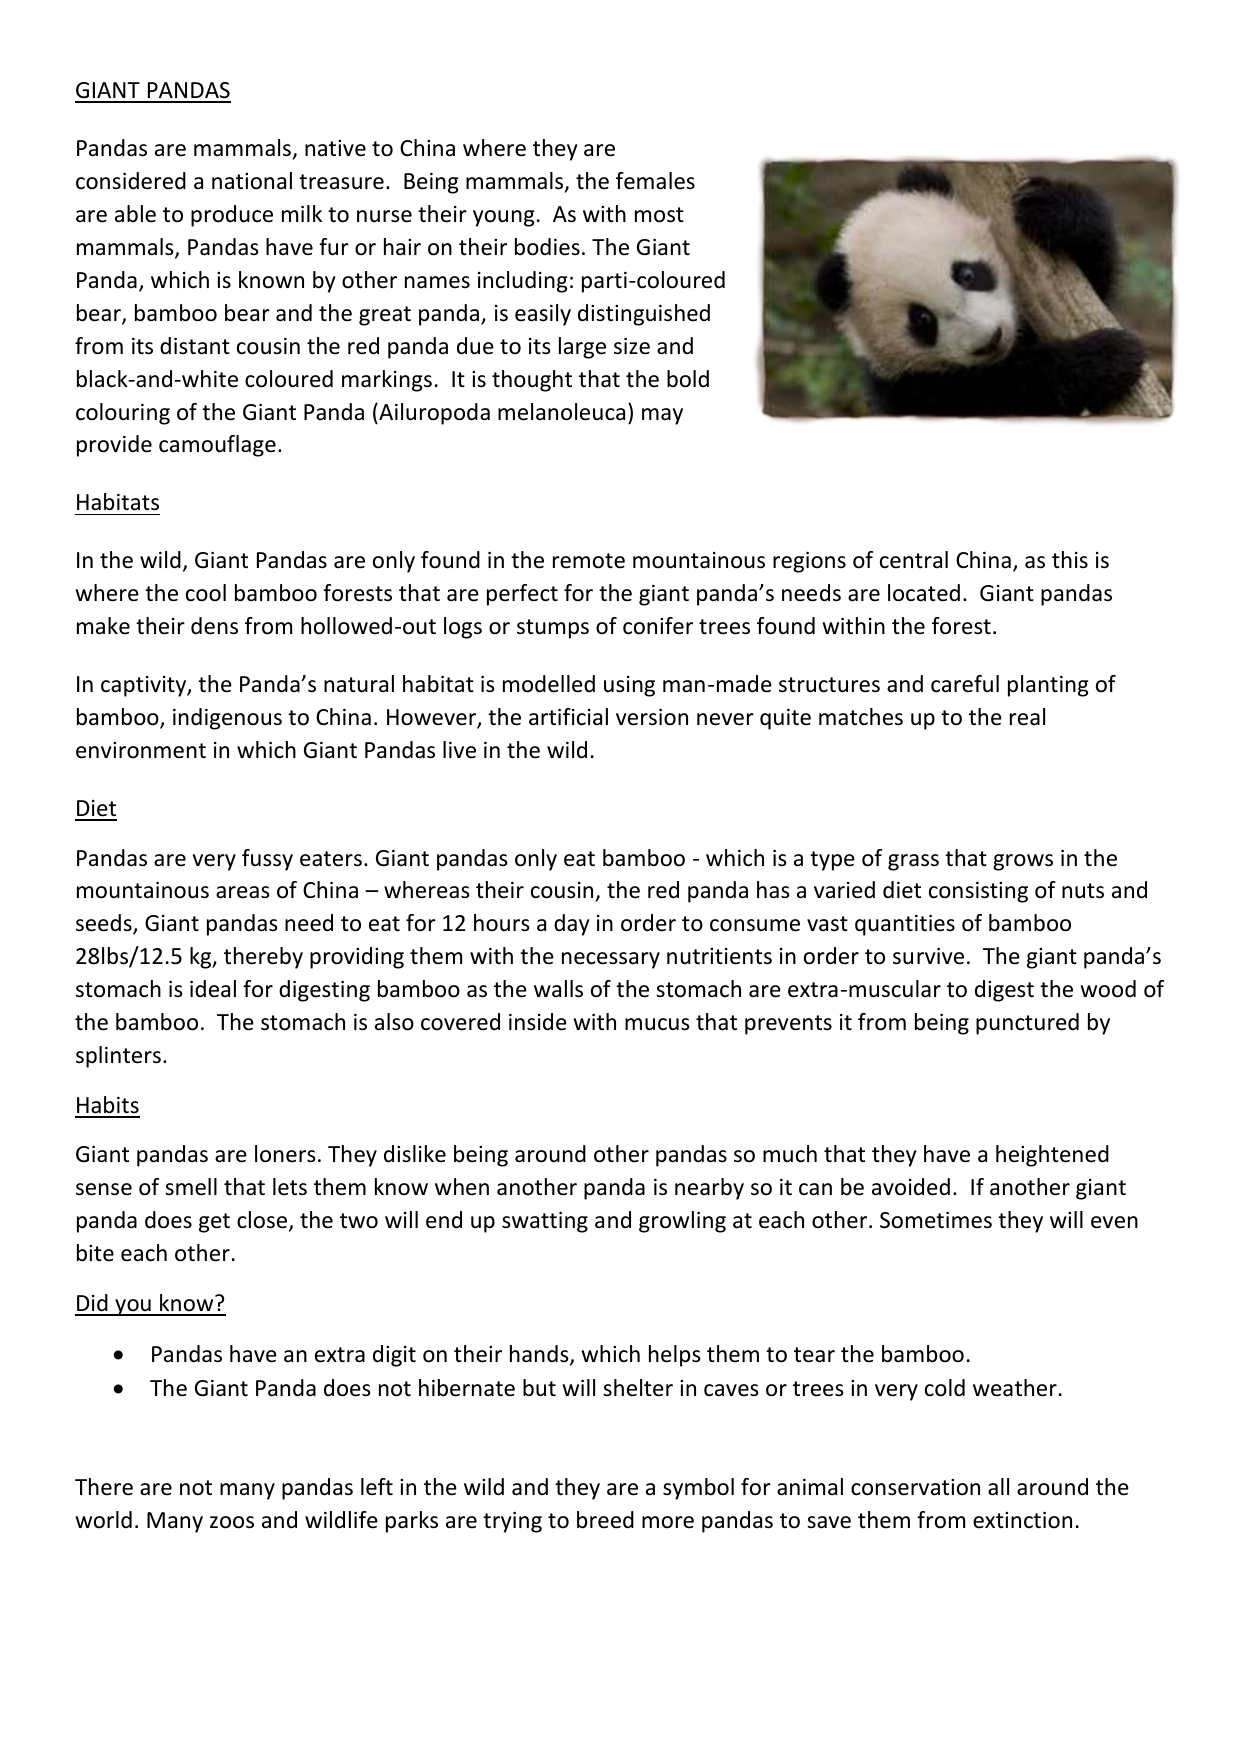 words to describe a panda bear